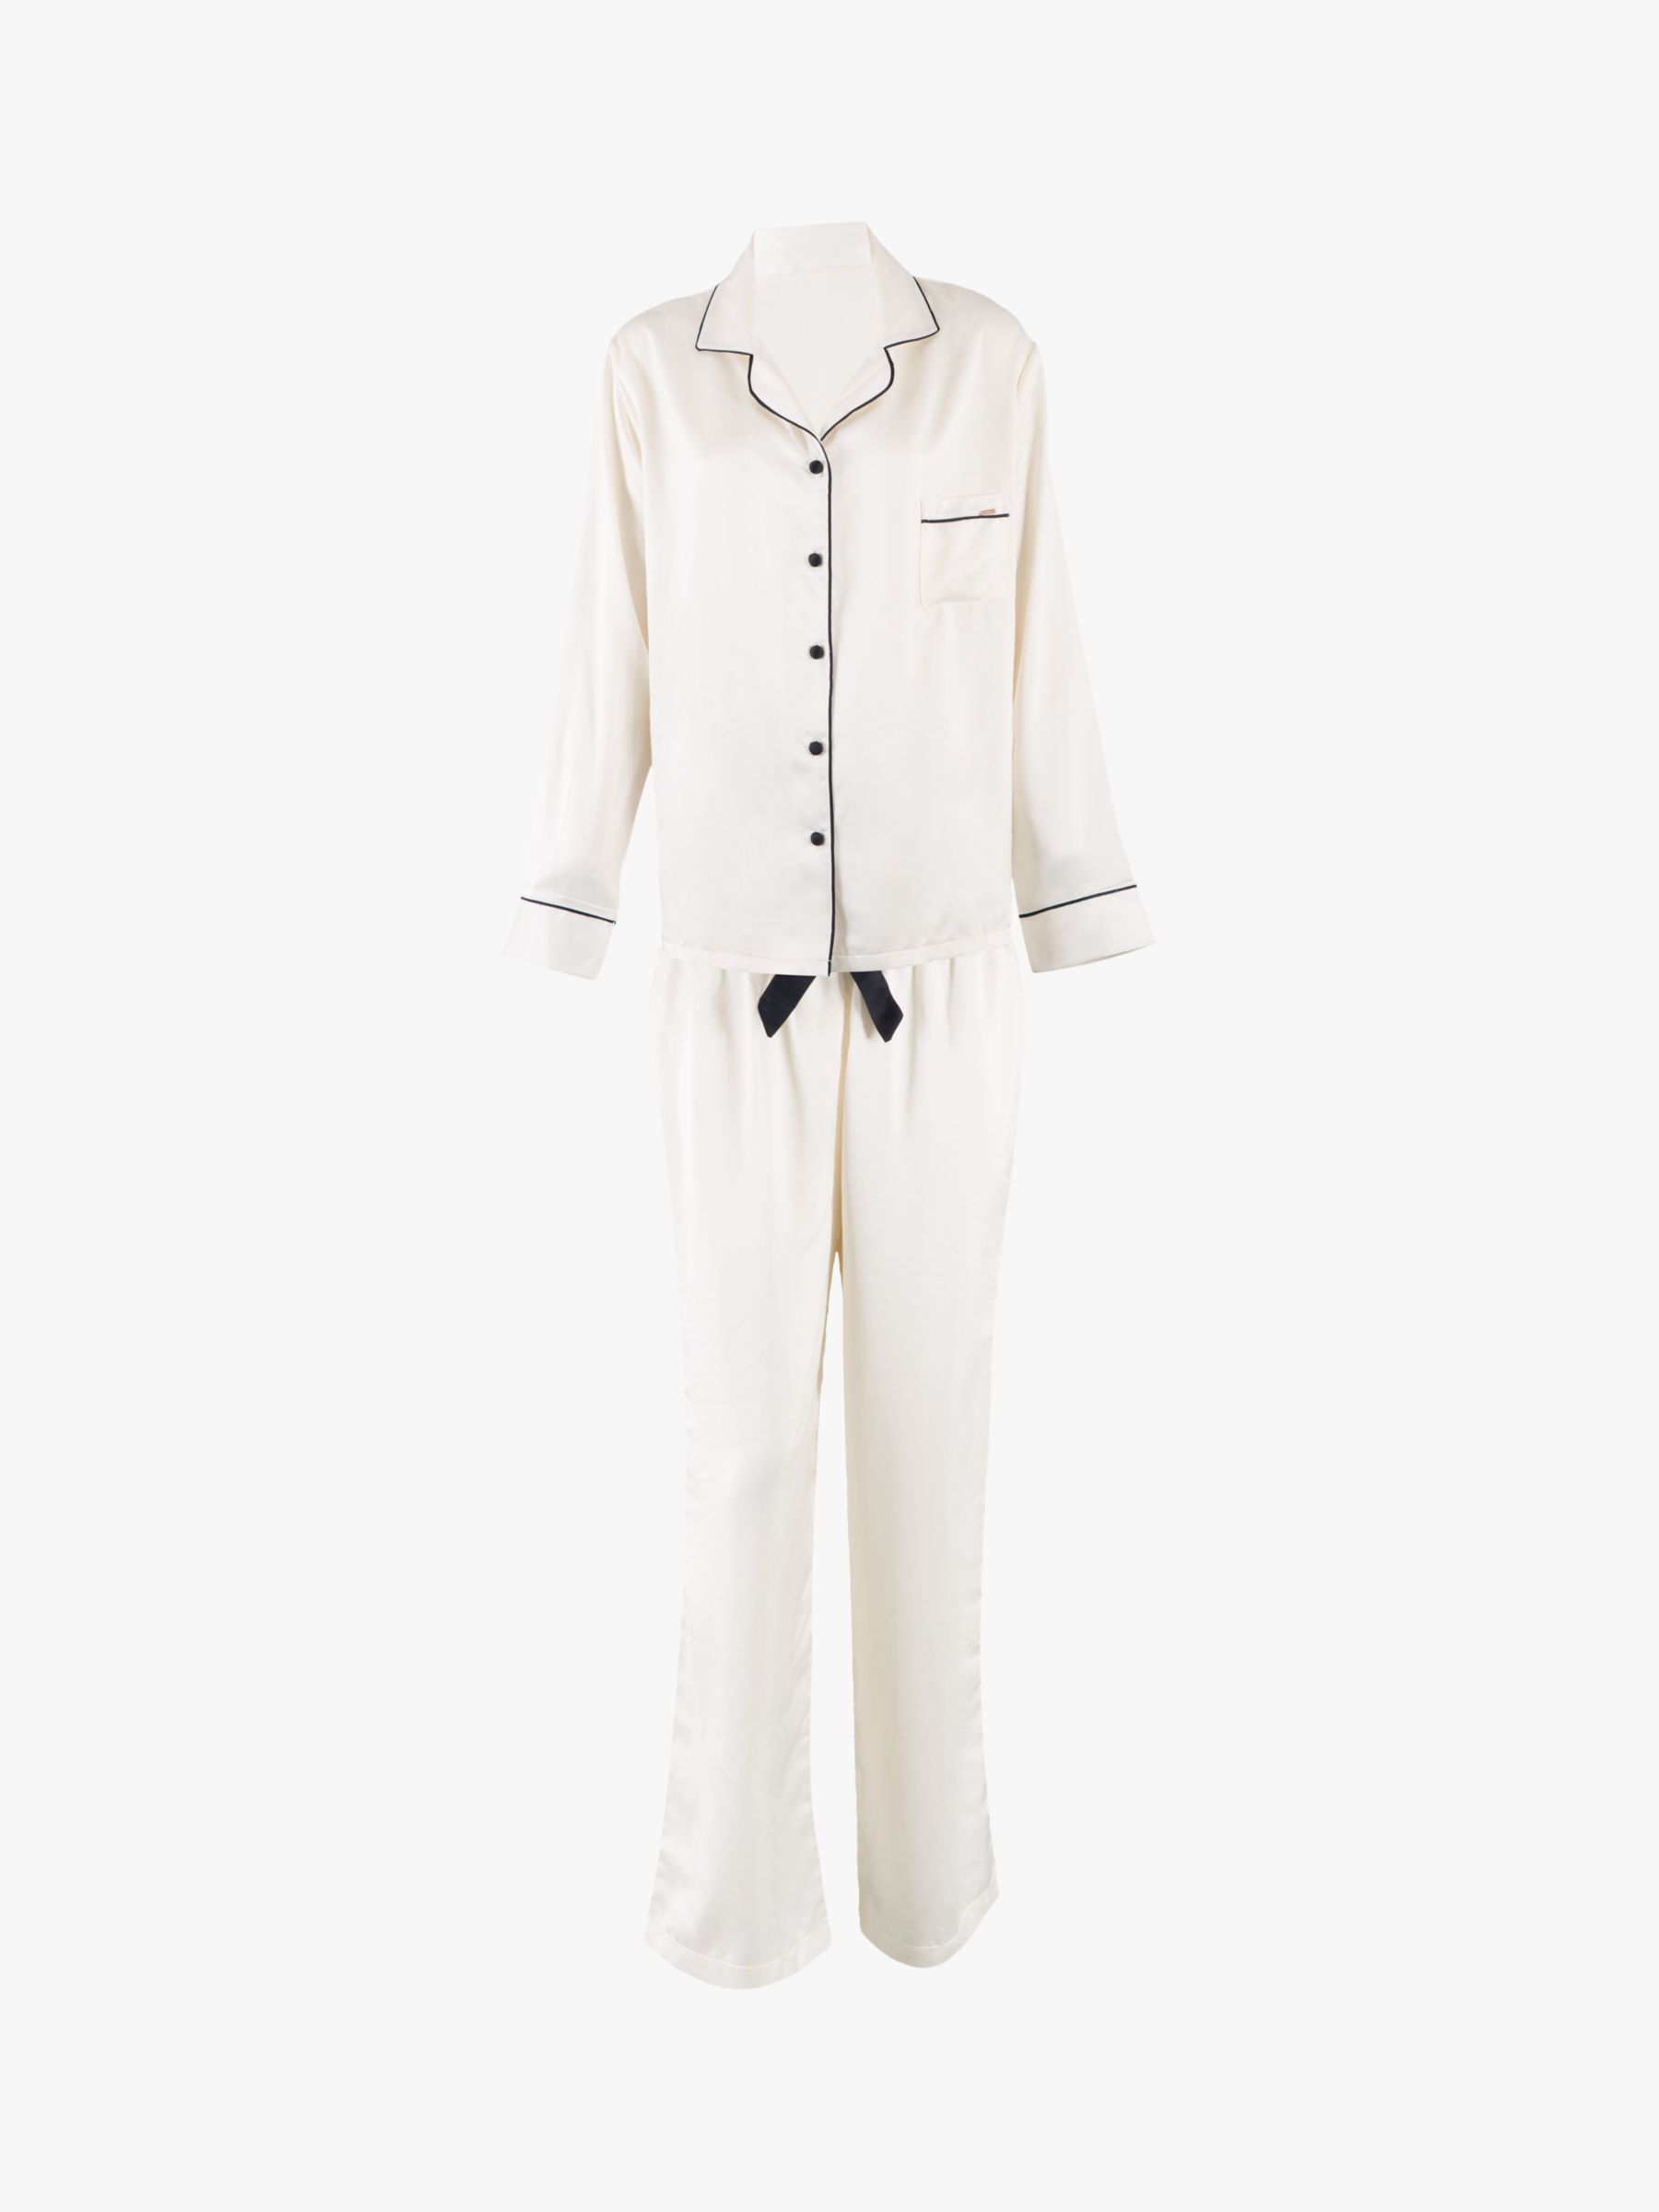 Bluebella Claudia Satin Trouser Pyjama Set, White, 8